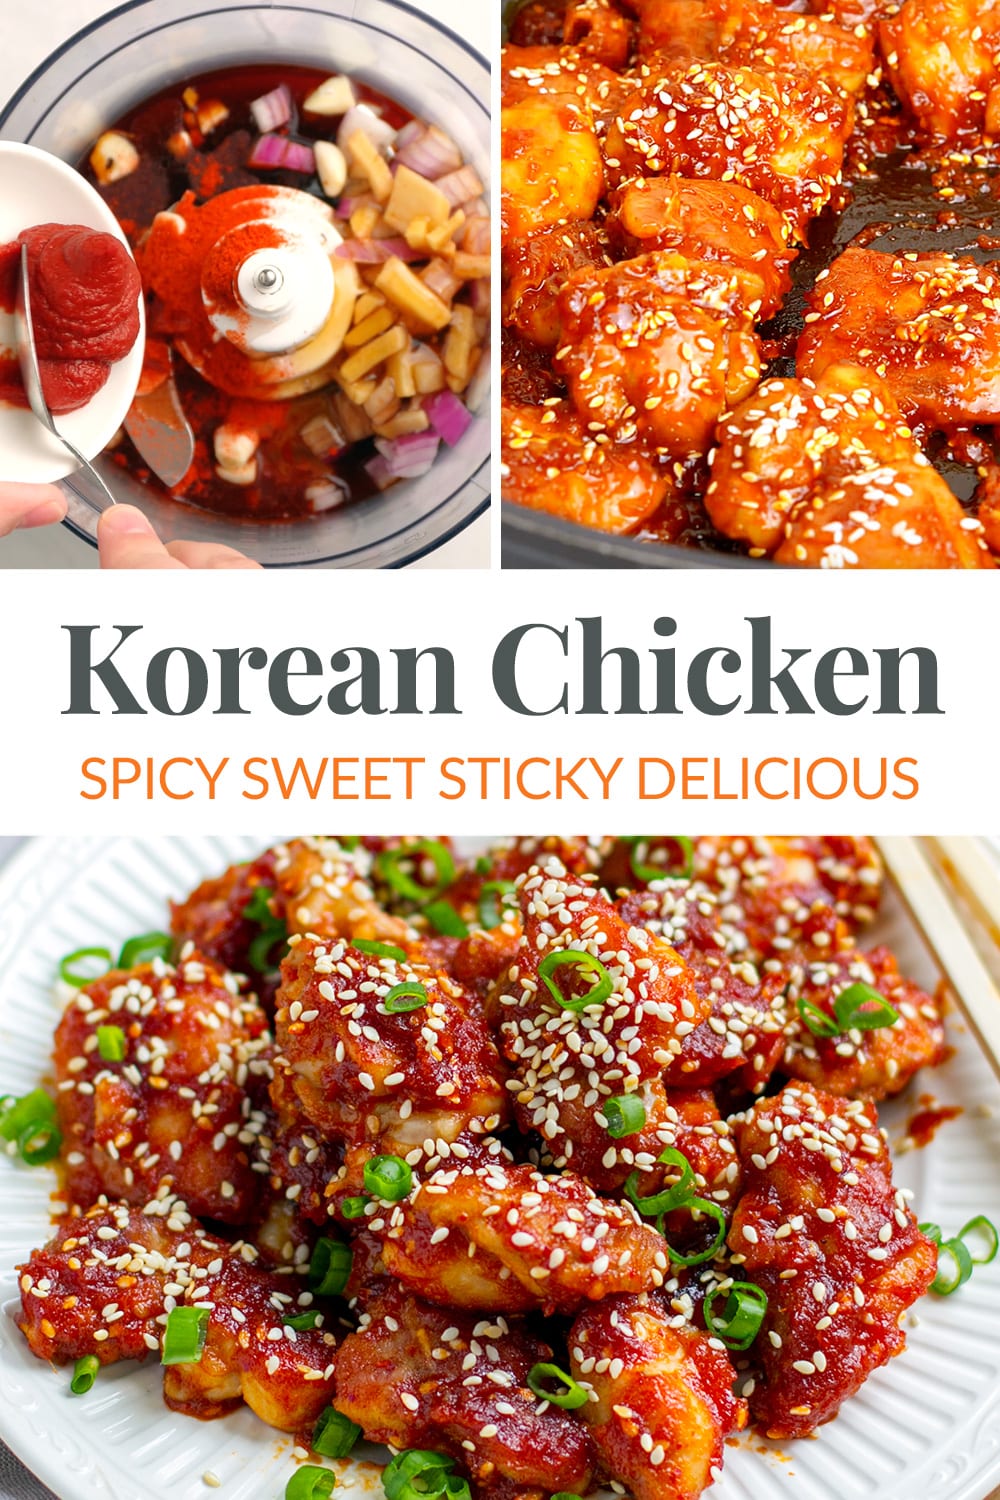 Korean Chicken Recipe (Spicy, Sweet & Savory)